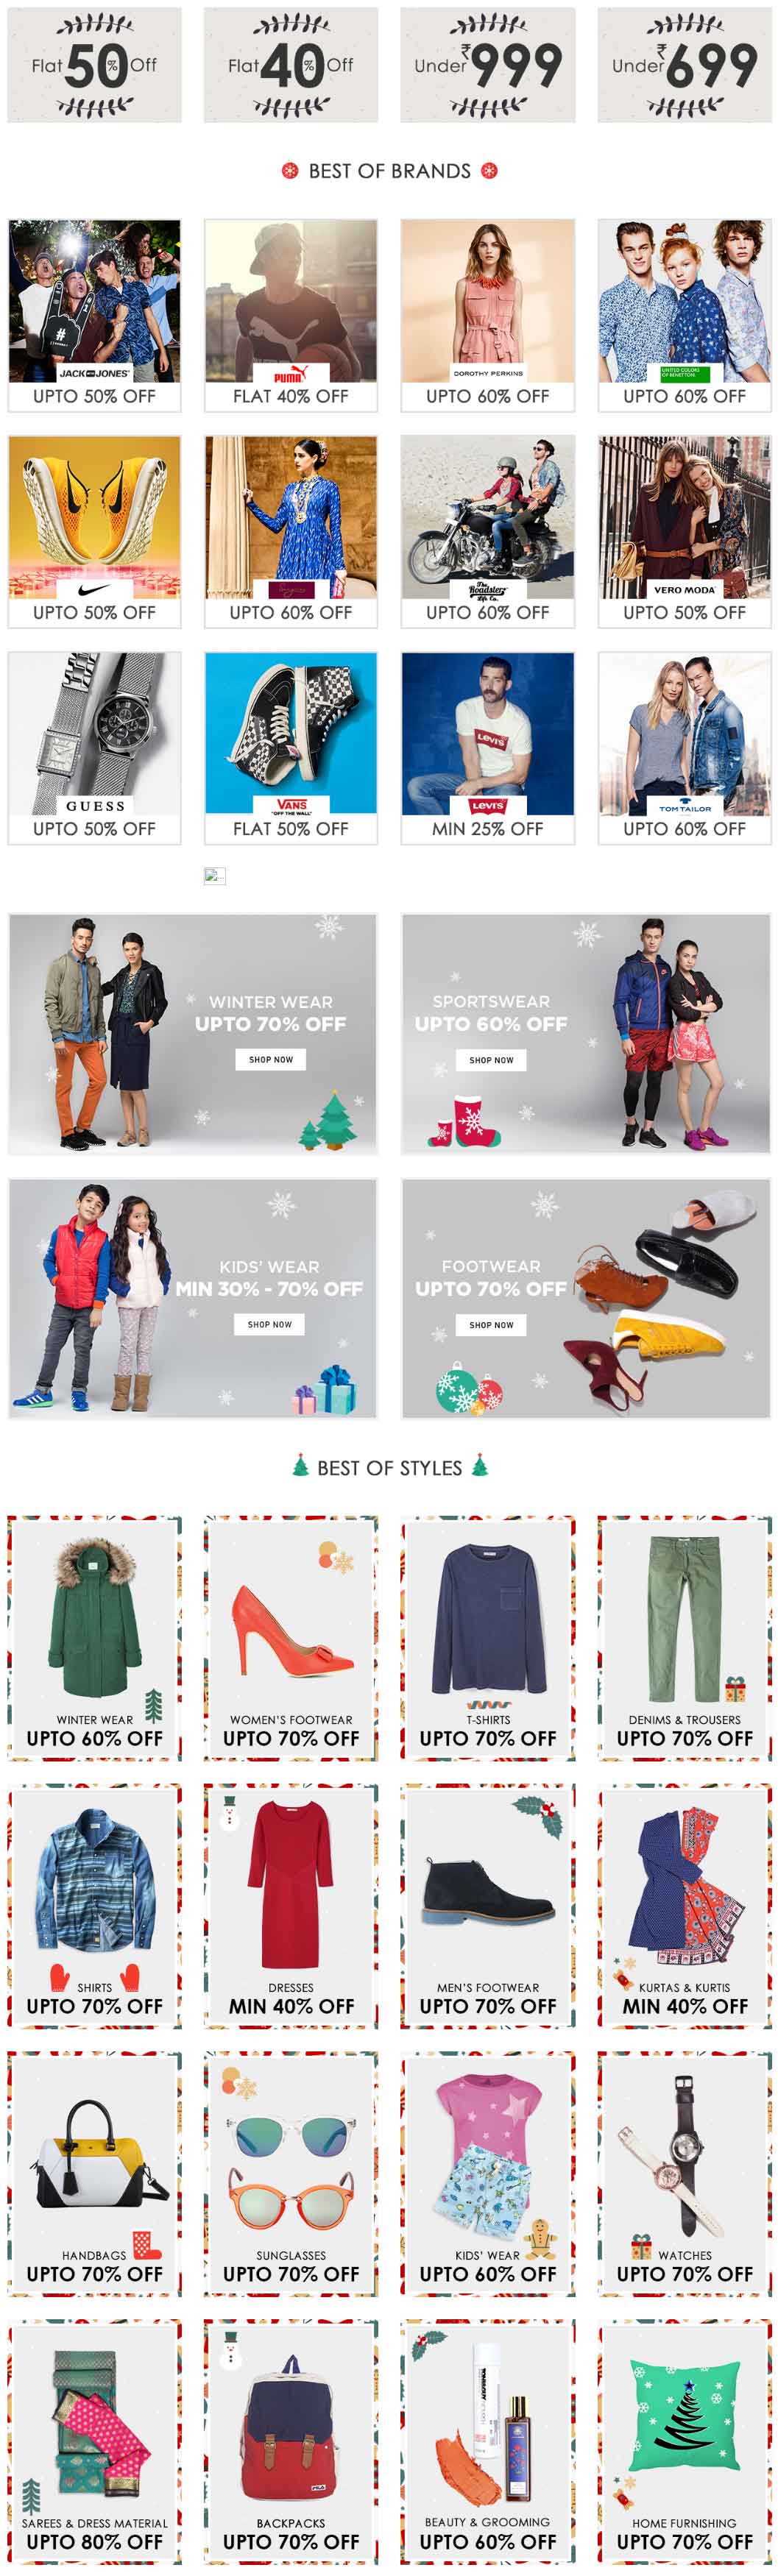 jabong-end-of-season-fashion-sale